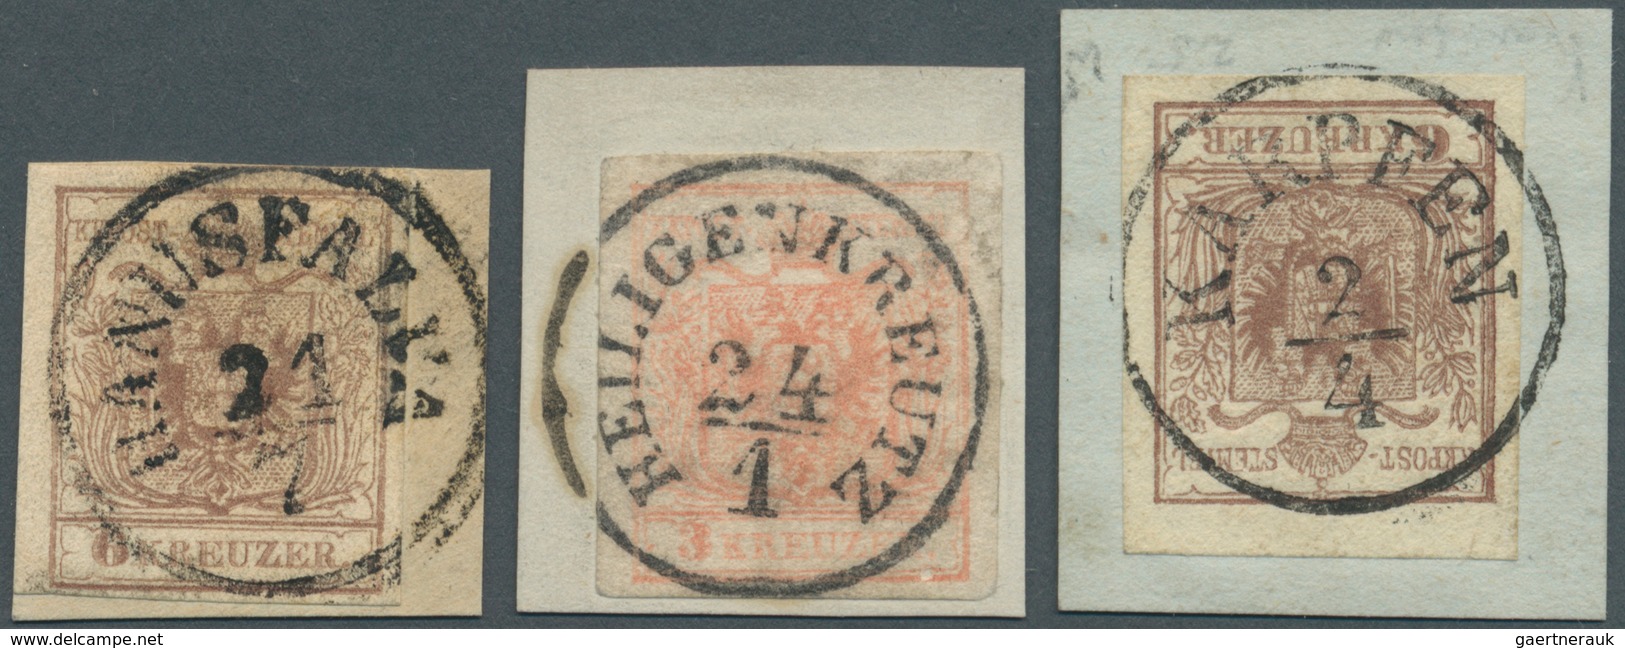 Österreich - Stempel: 1850, "HANUSFALVA", "HEILIGENKREUZ" Und "KARPFEN" Je K1 Auf Briefstücken (Müll - Frankeermachines (EMA)